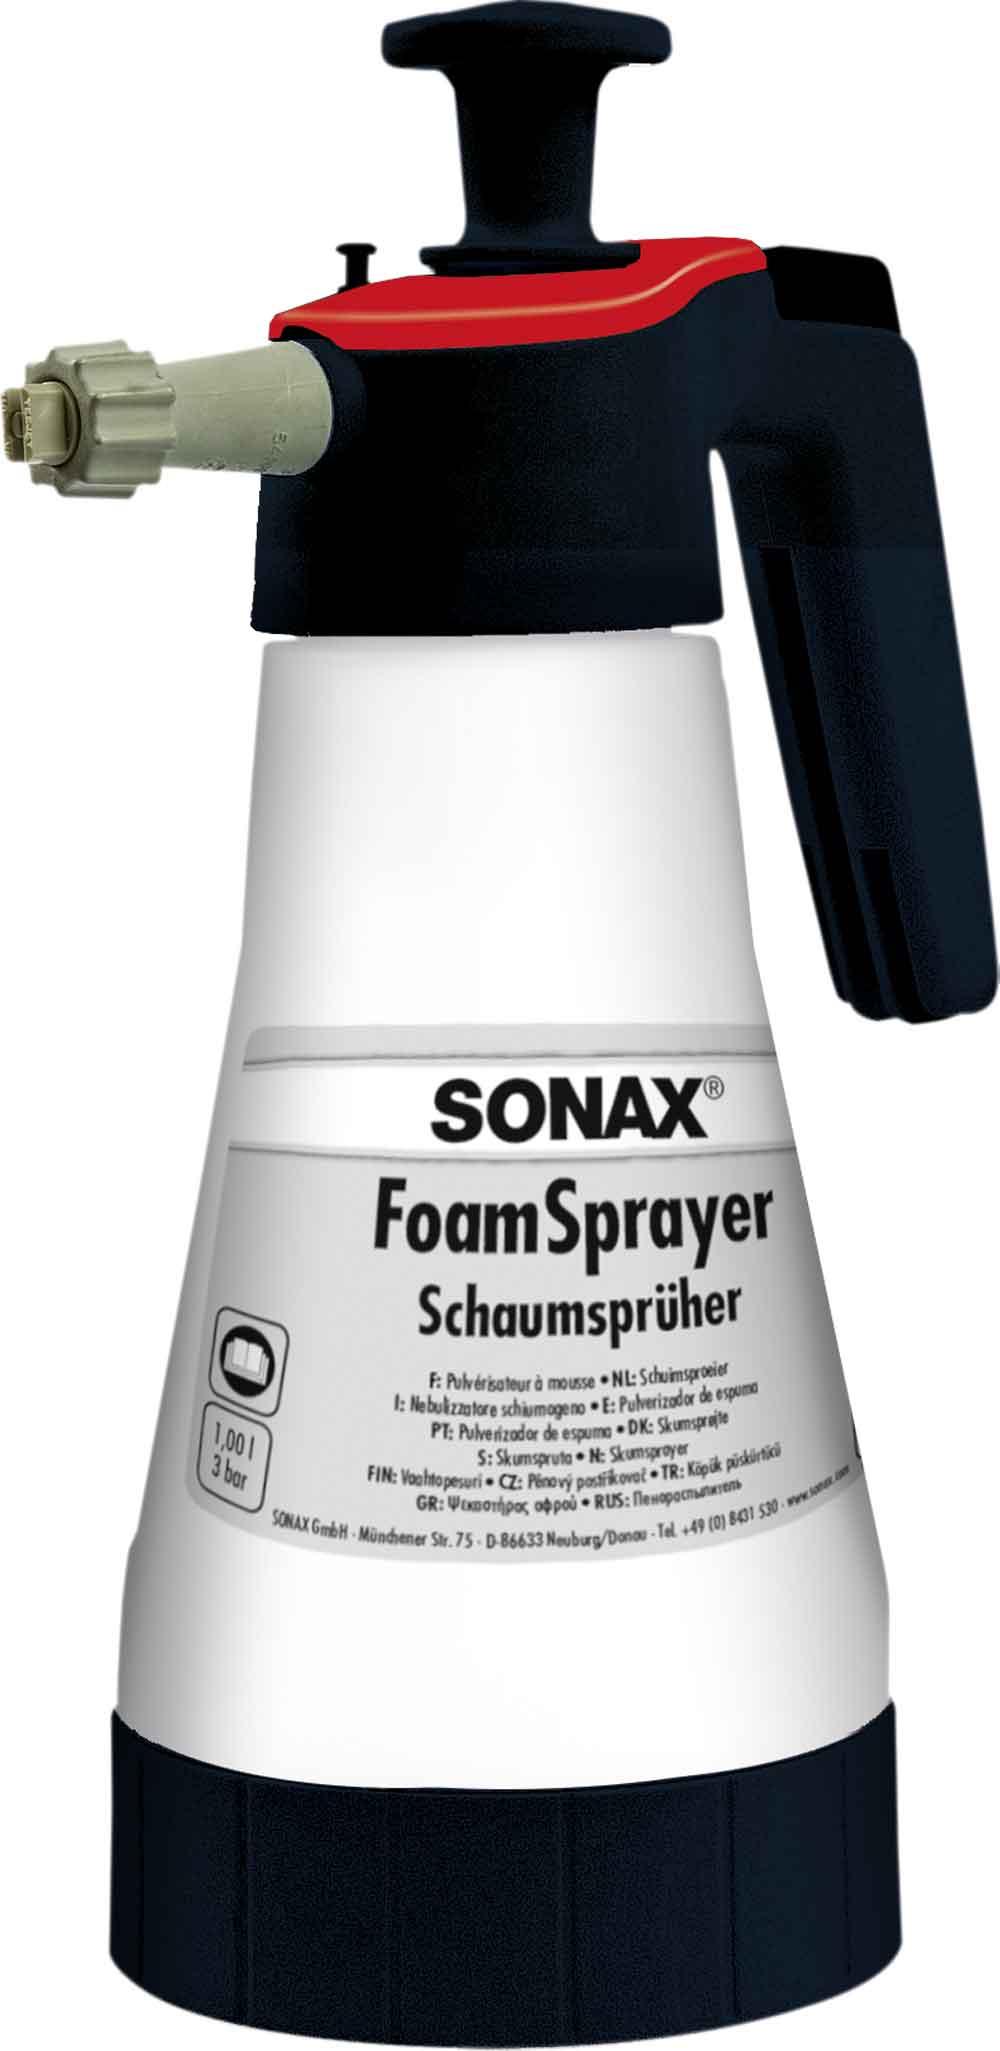 SONAX FoamSprayer 1l Schaumsprüher